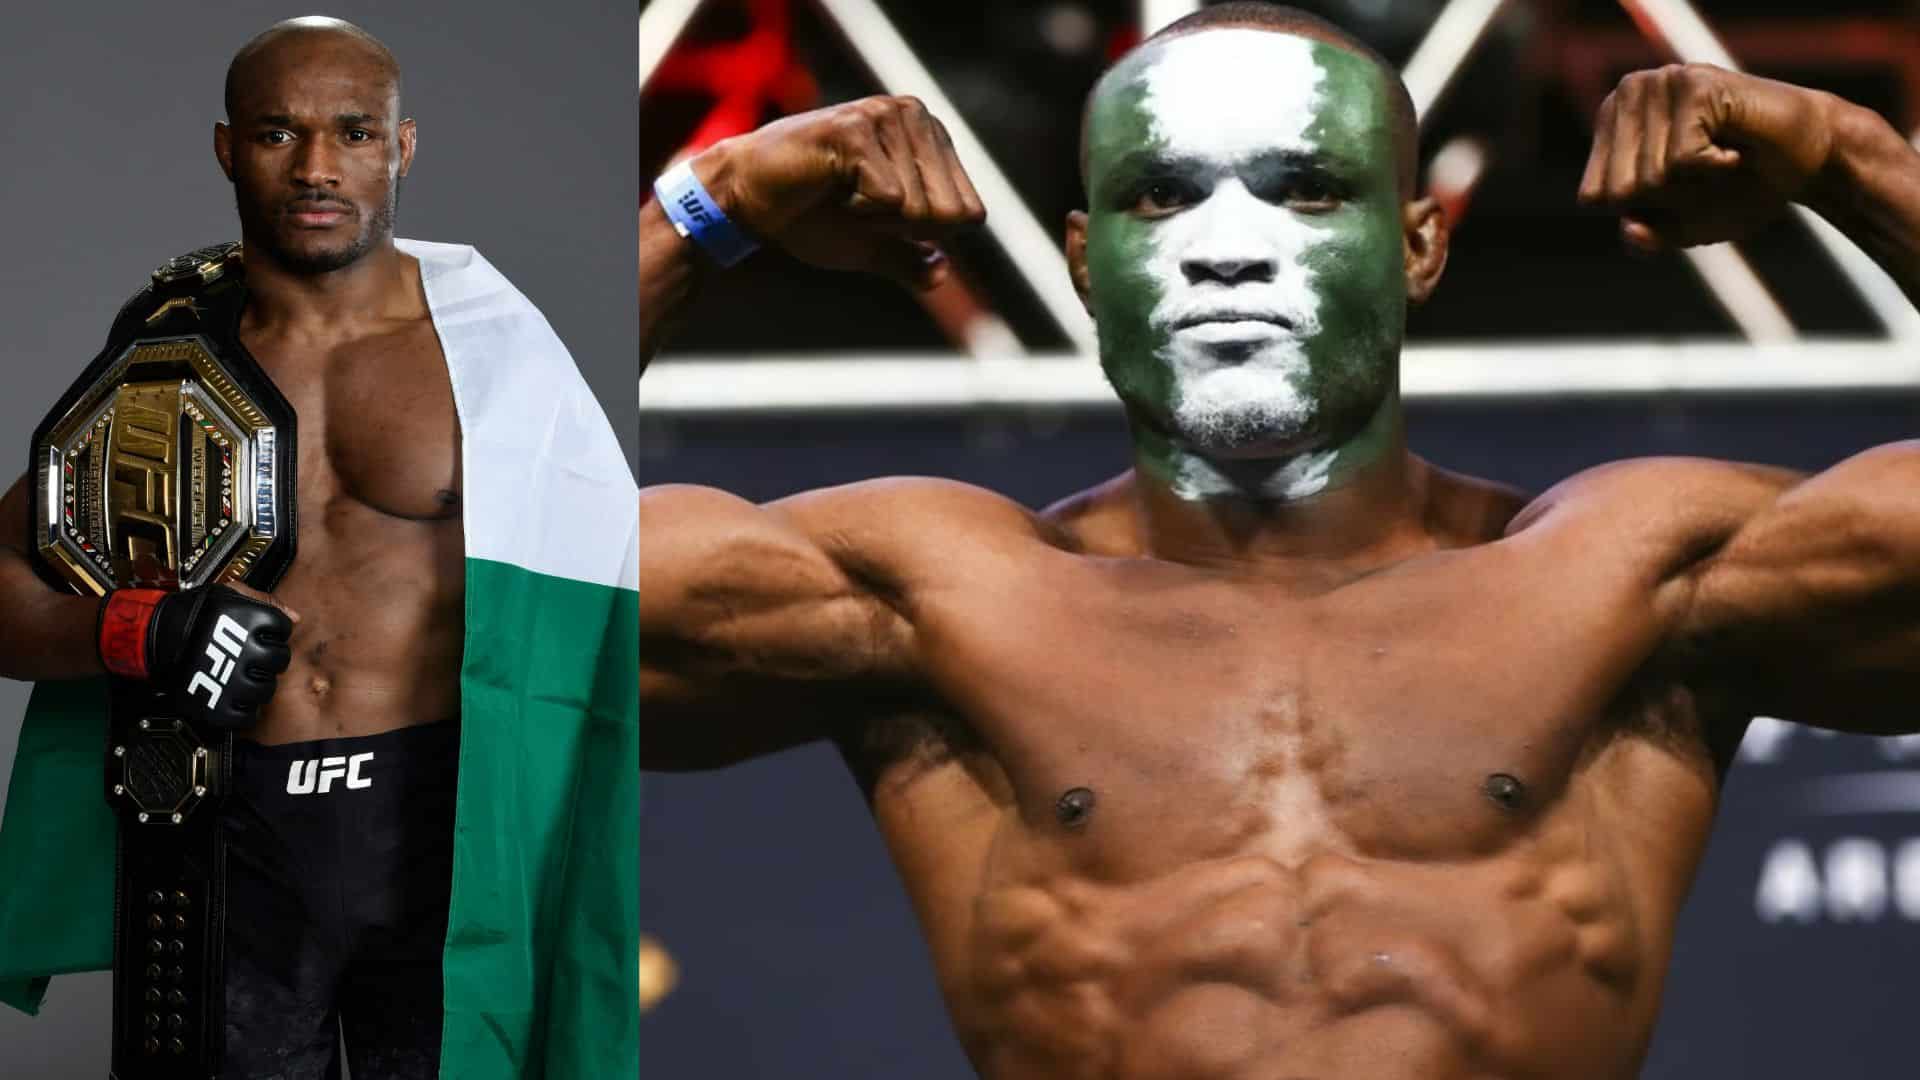 MMA : Le nigérian Kamaru Usman désigne son grand rêve actuel à l’UFC